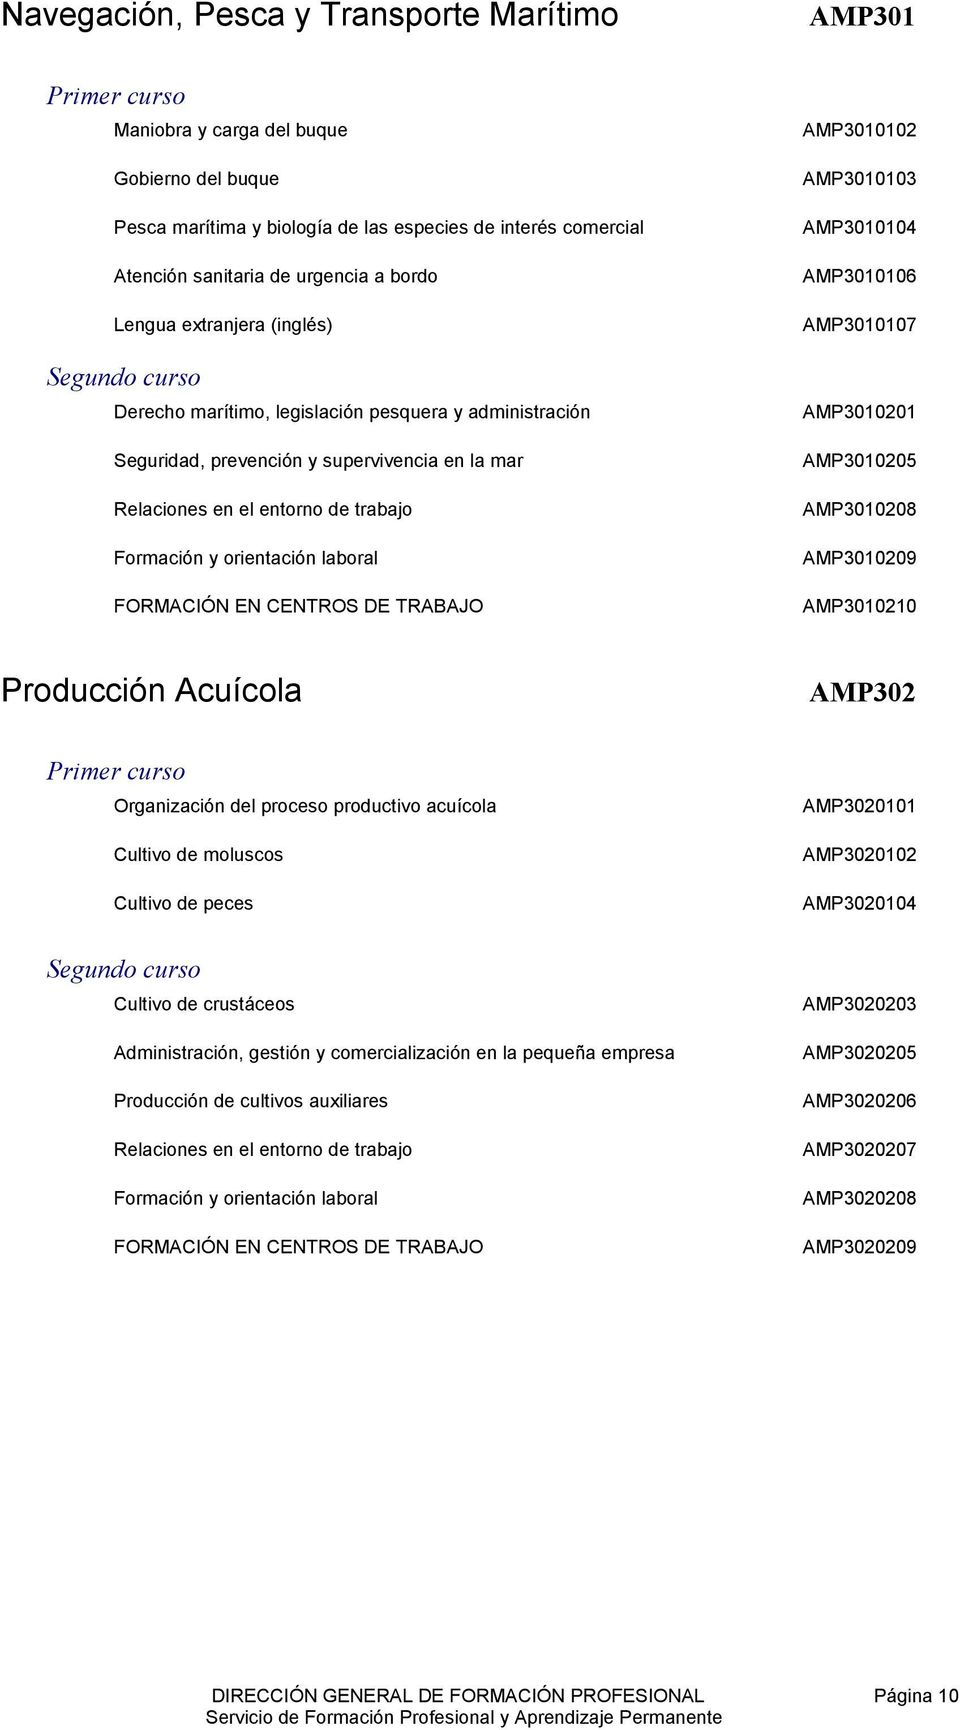 AMP3010107 AMP3010201 AMP3010205 AMP3010208 AMP3010209 AMP3010210 Producción Acuícola AMP302 Organización del proceso productivo acuícola Cultivo de moluscos Cultivo de peces AMP3020101